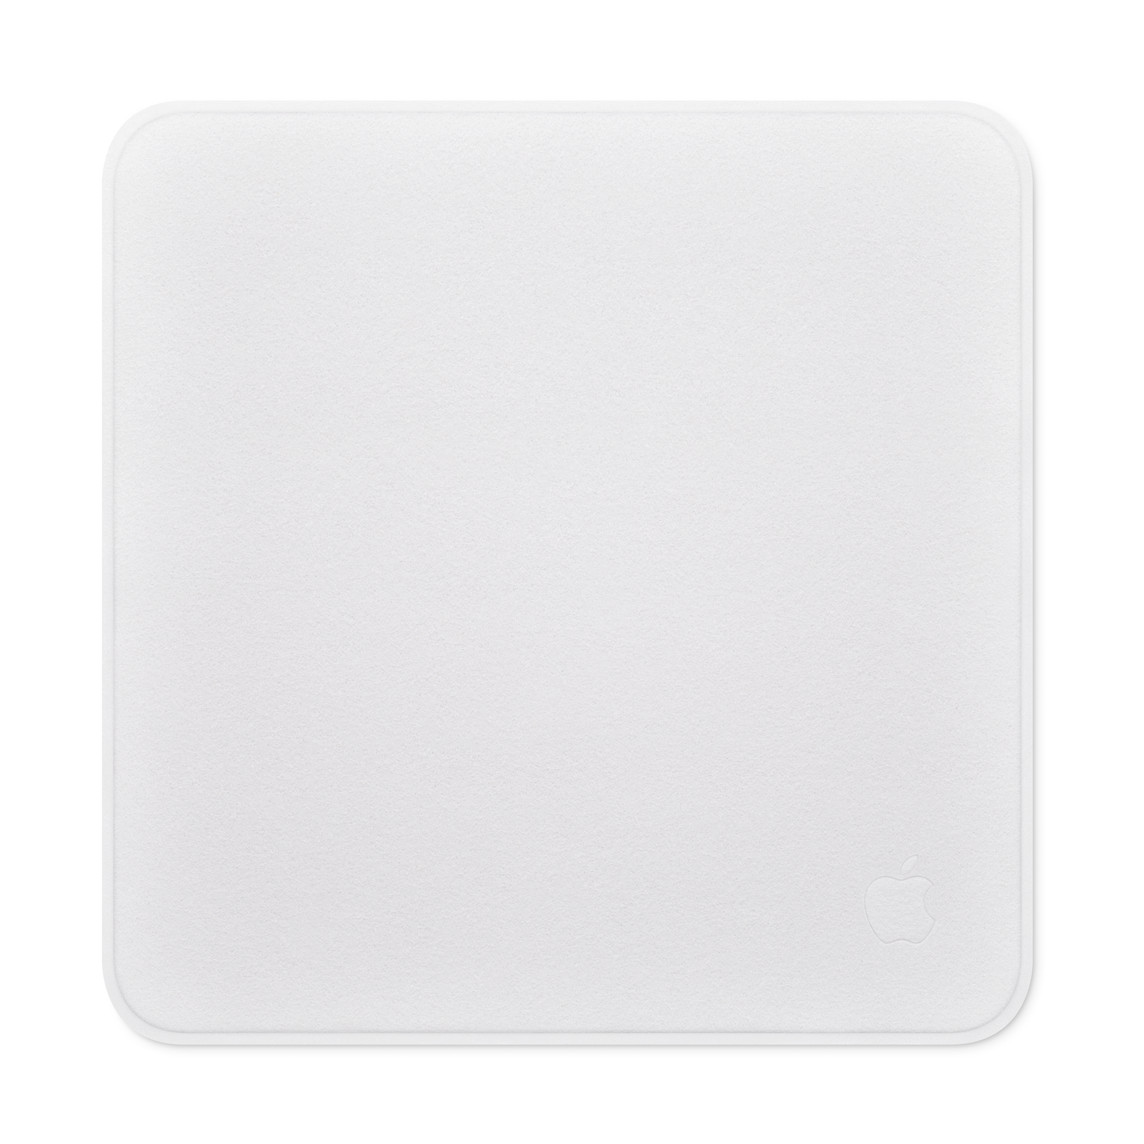 Paño de pulido cuadrado con esquinas redondeadas y el logo de Apple grabado en la esquina inferior derecha